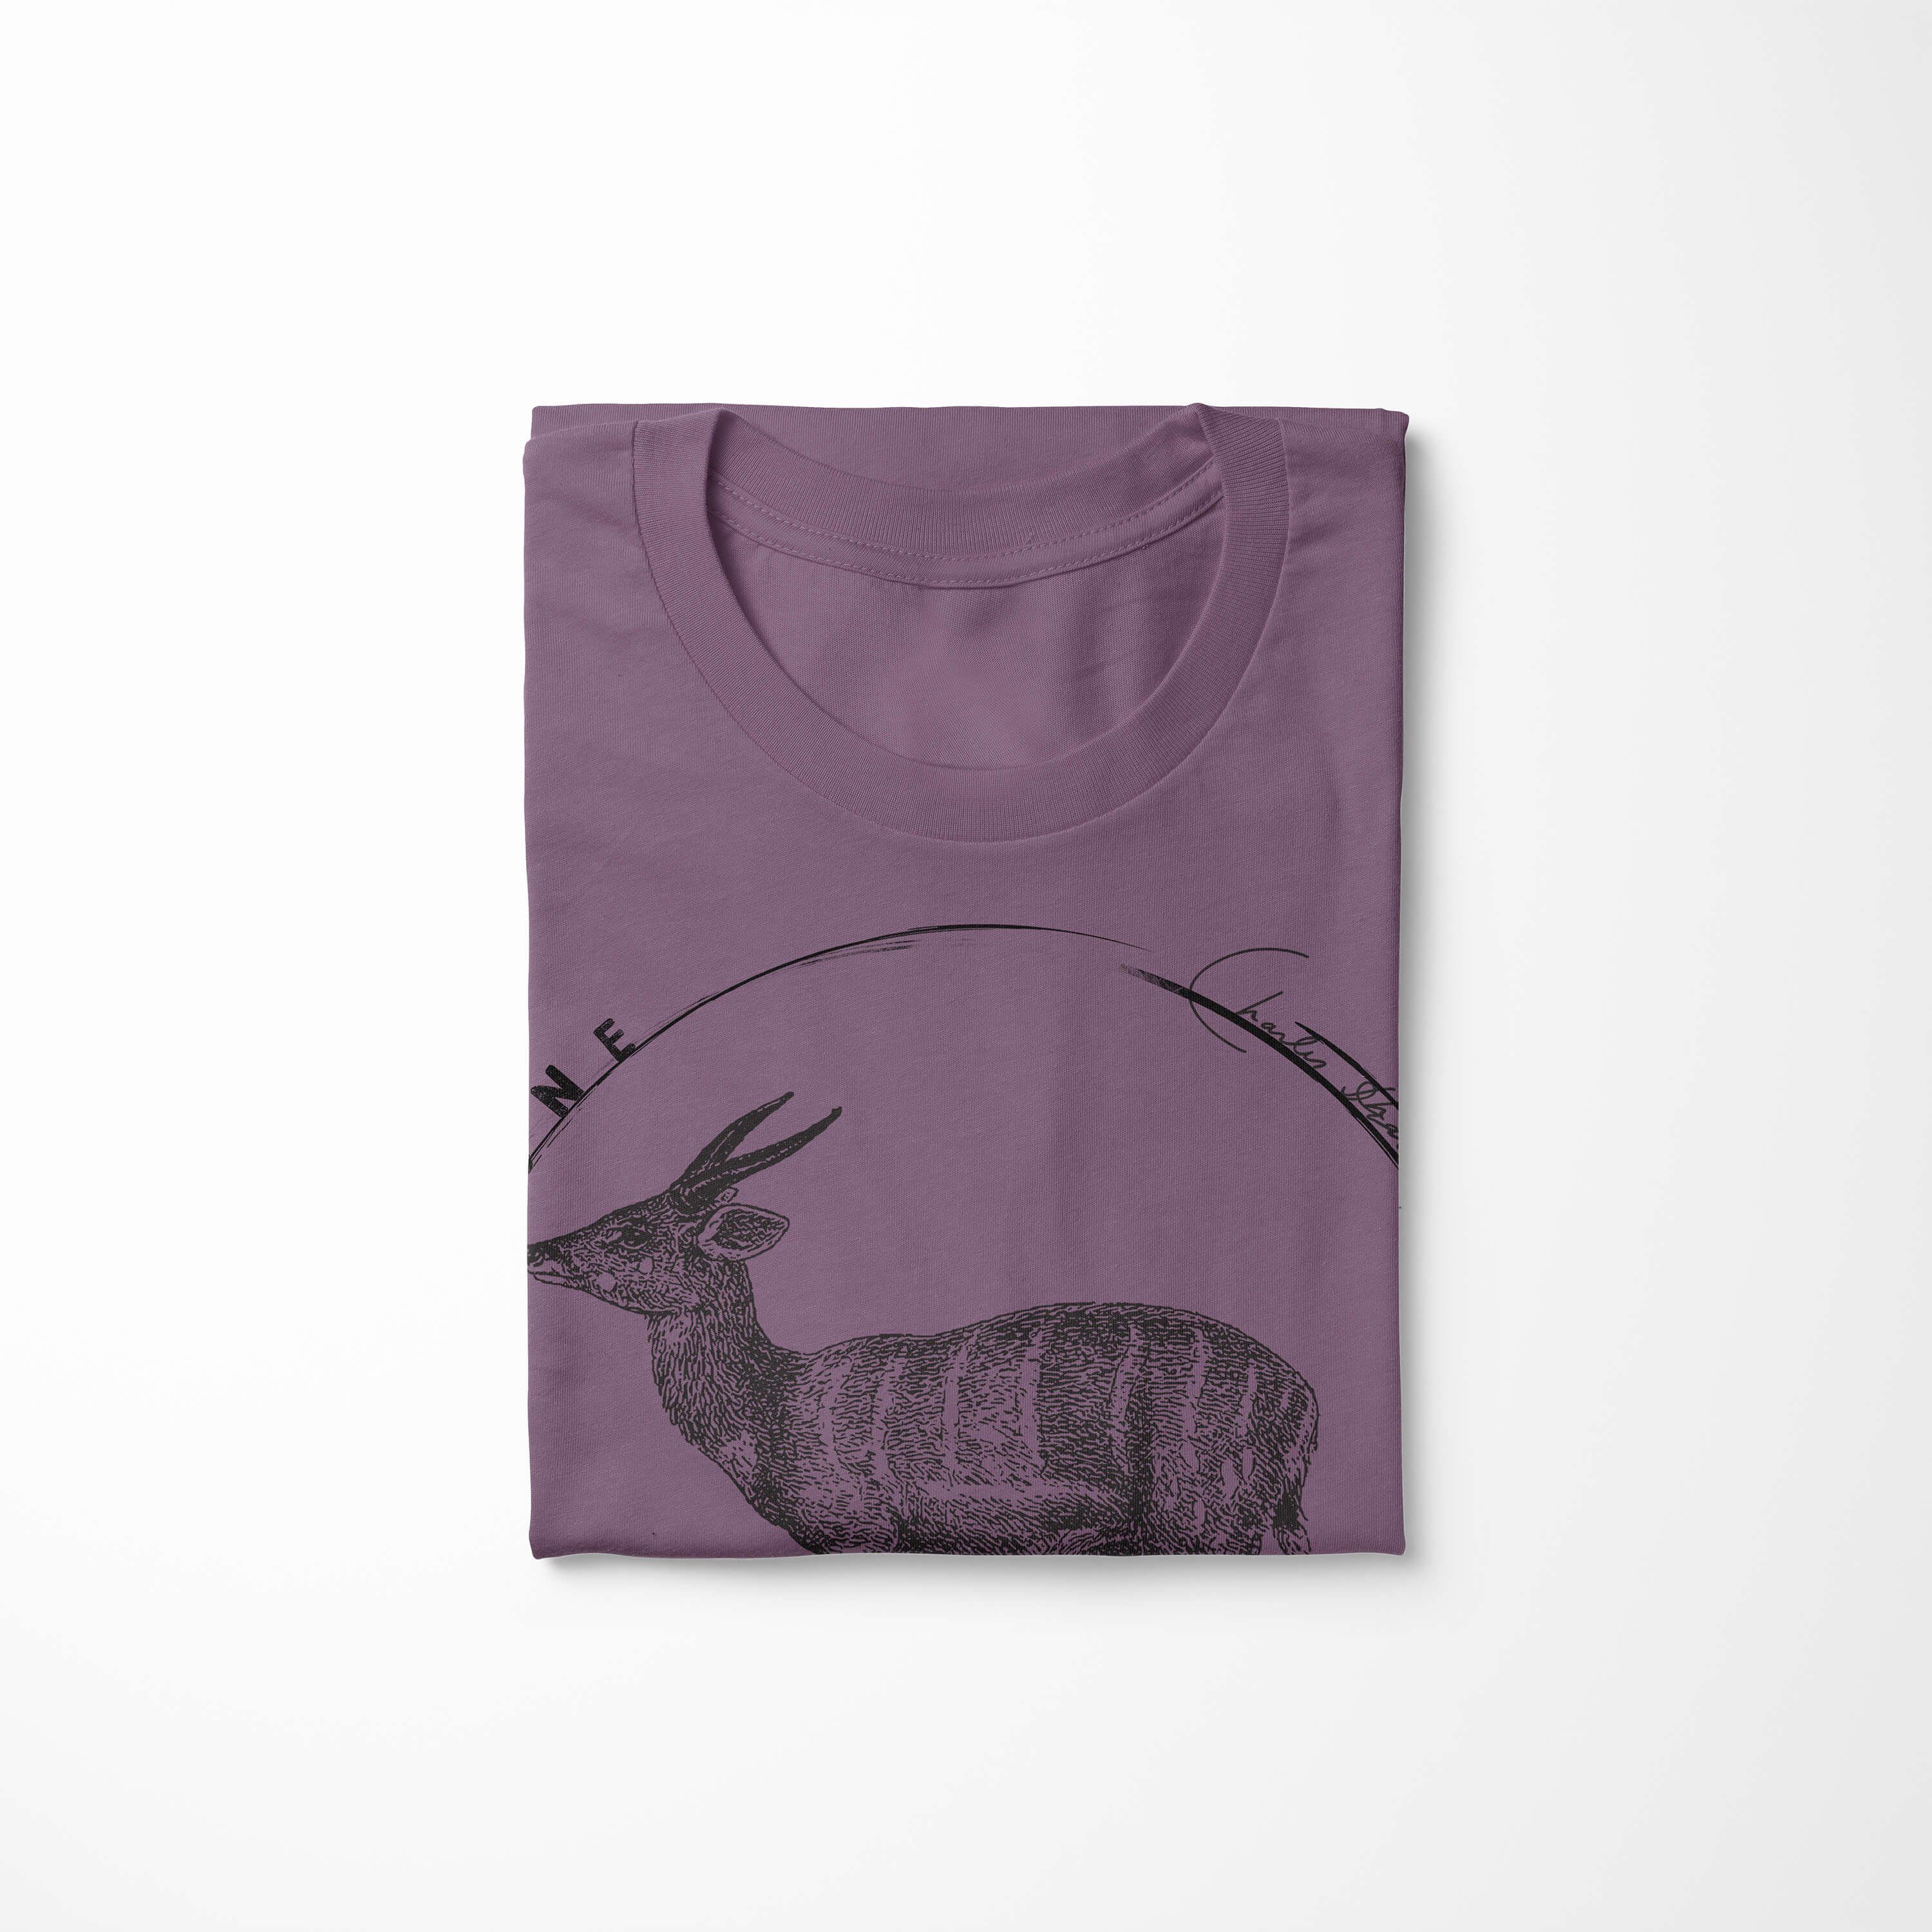 Art T-Shirt Sinus Herren Evolution Antilope Shiraz T-Shirt